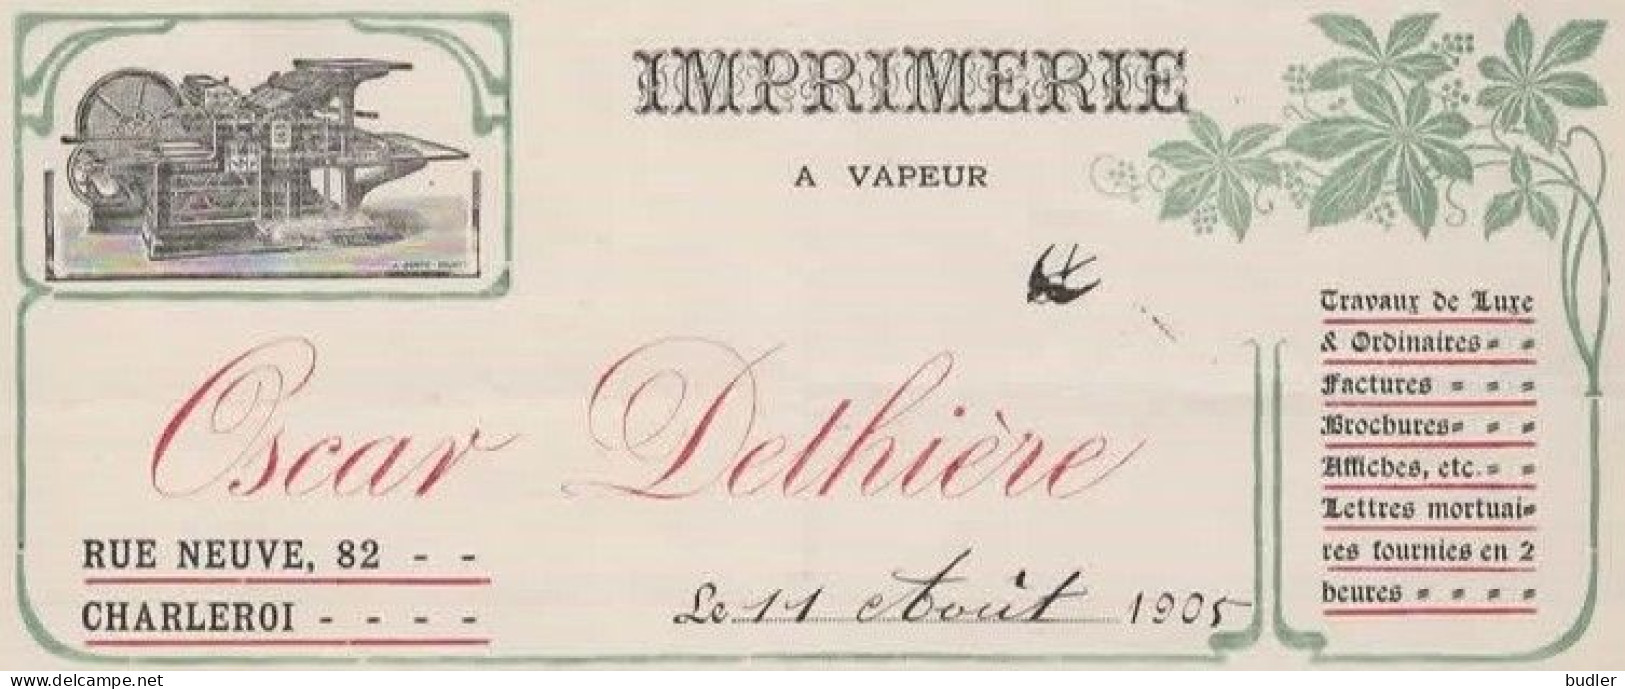 ART NOUVEAU / JUGENDSTIL 1905:Factuur Van/Facture De  ##Imprimerie à Vapeur OSCAR DETHIÈRE, Rue Neuve, 82, CHARLEROI##. - Imprimerie & Papeterie